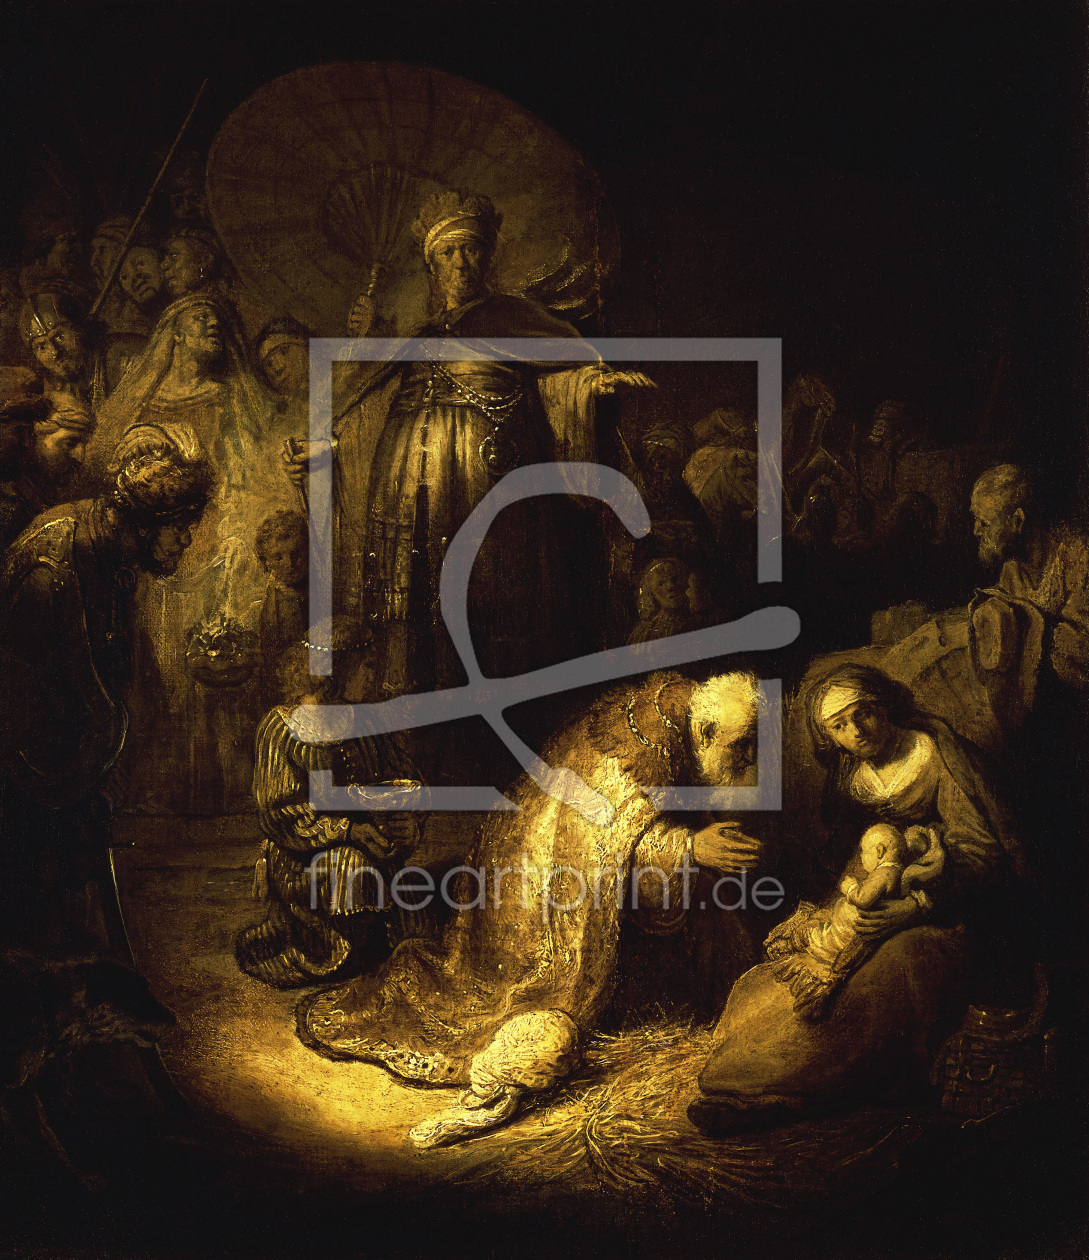 Bild-Nr.: 30007573 Rembrandt / Adoration of the Magi / 1632 erstellt von Rembrandt Harmenszoon van Rijn